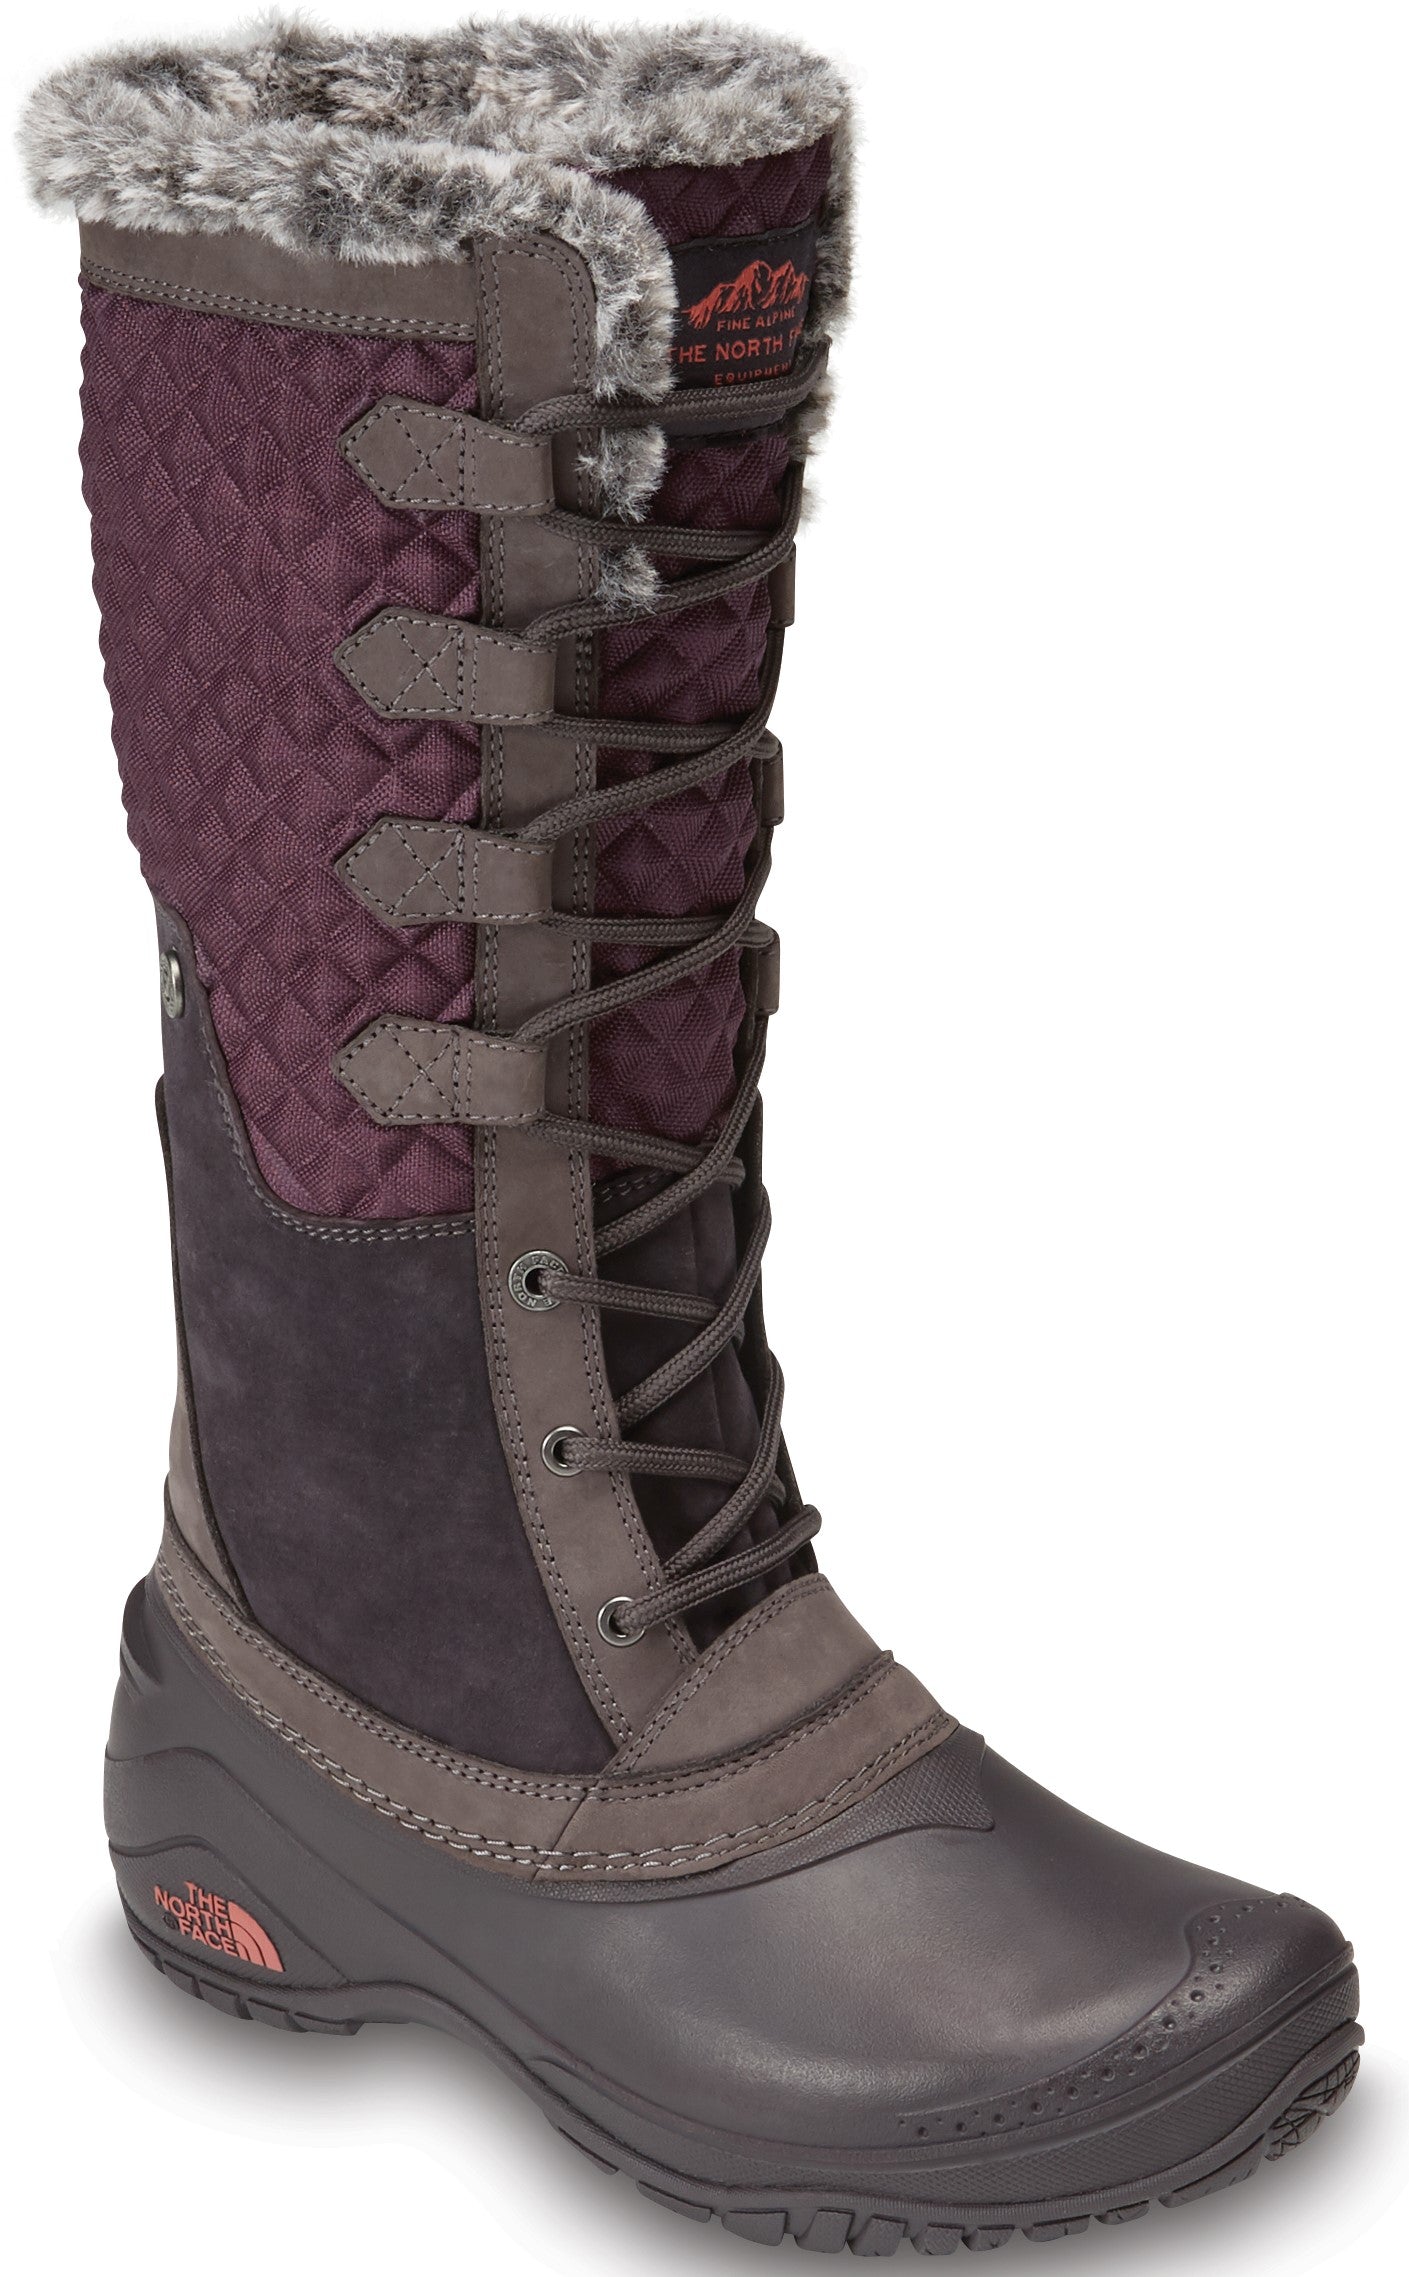 shellista iii tall boot